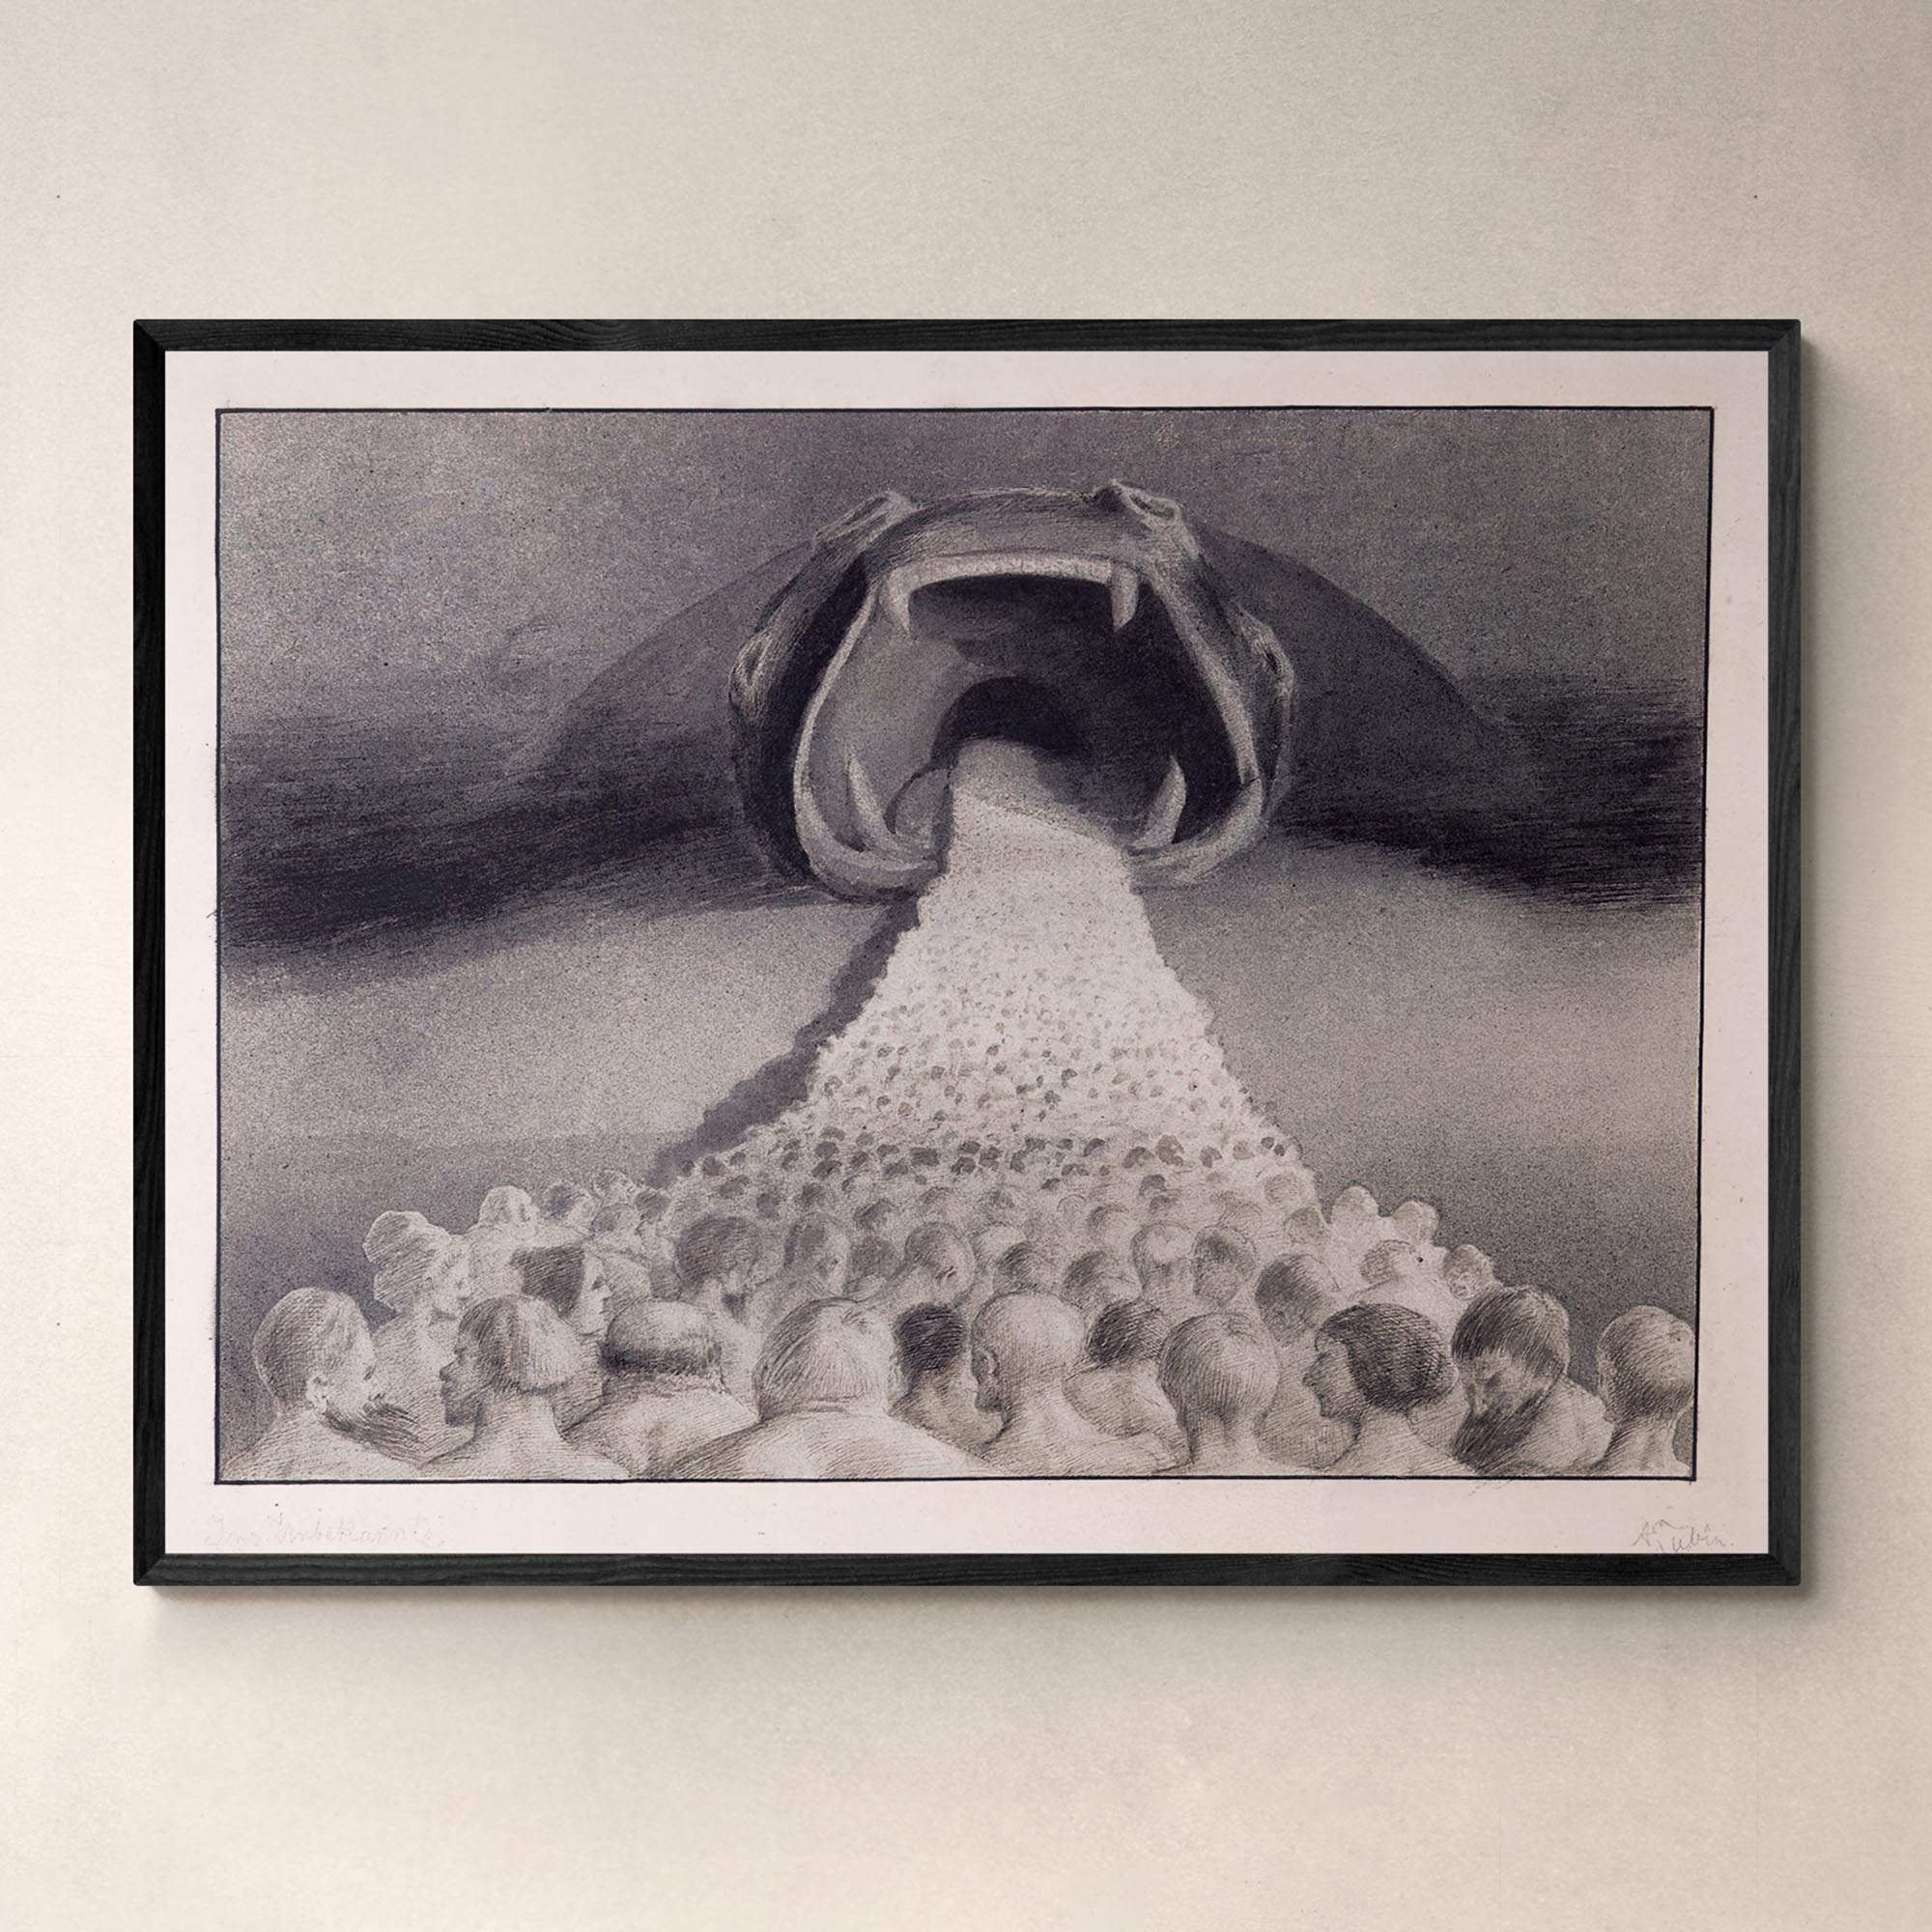 Framed Print A4 Landscape / Black Frame Framed Alfred Kubin - Into The Unknown Symbolist Surreal Wall Art Antique Gothic Supernatural Decor Dark Occult Framed Art Print